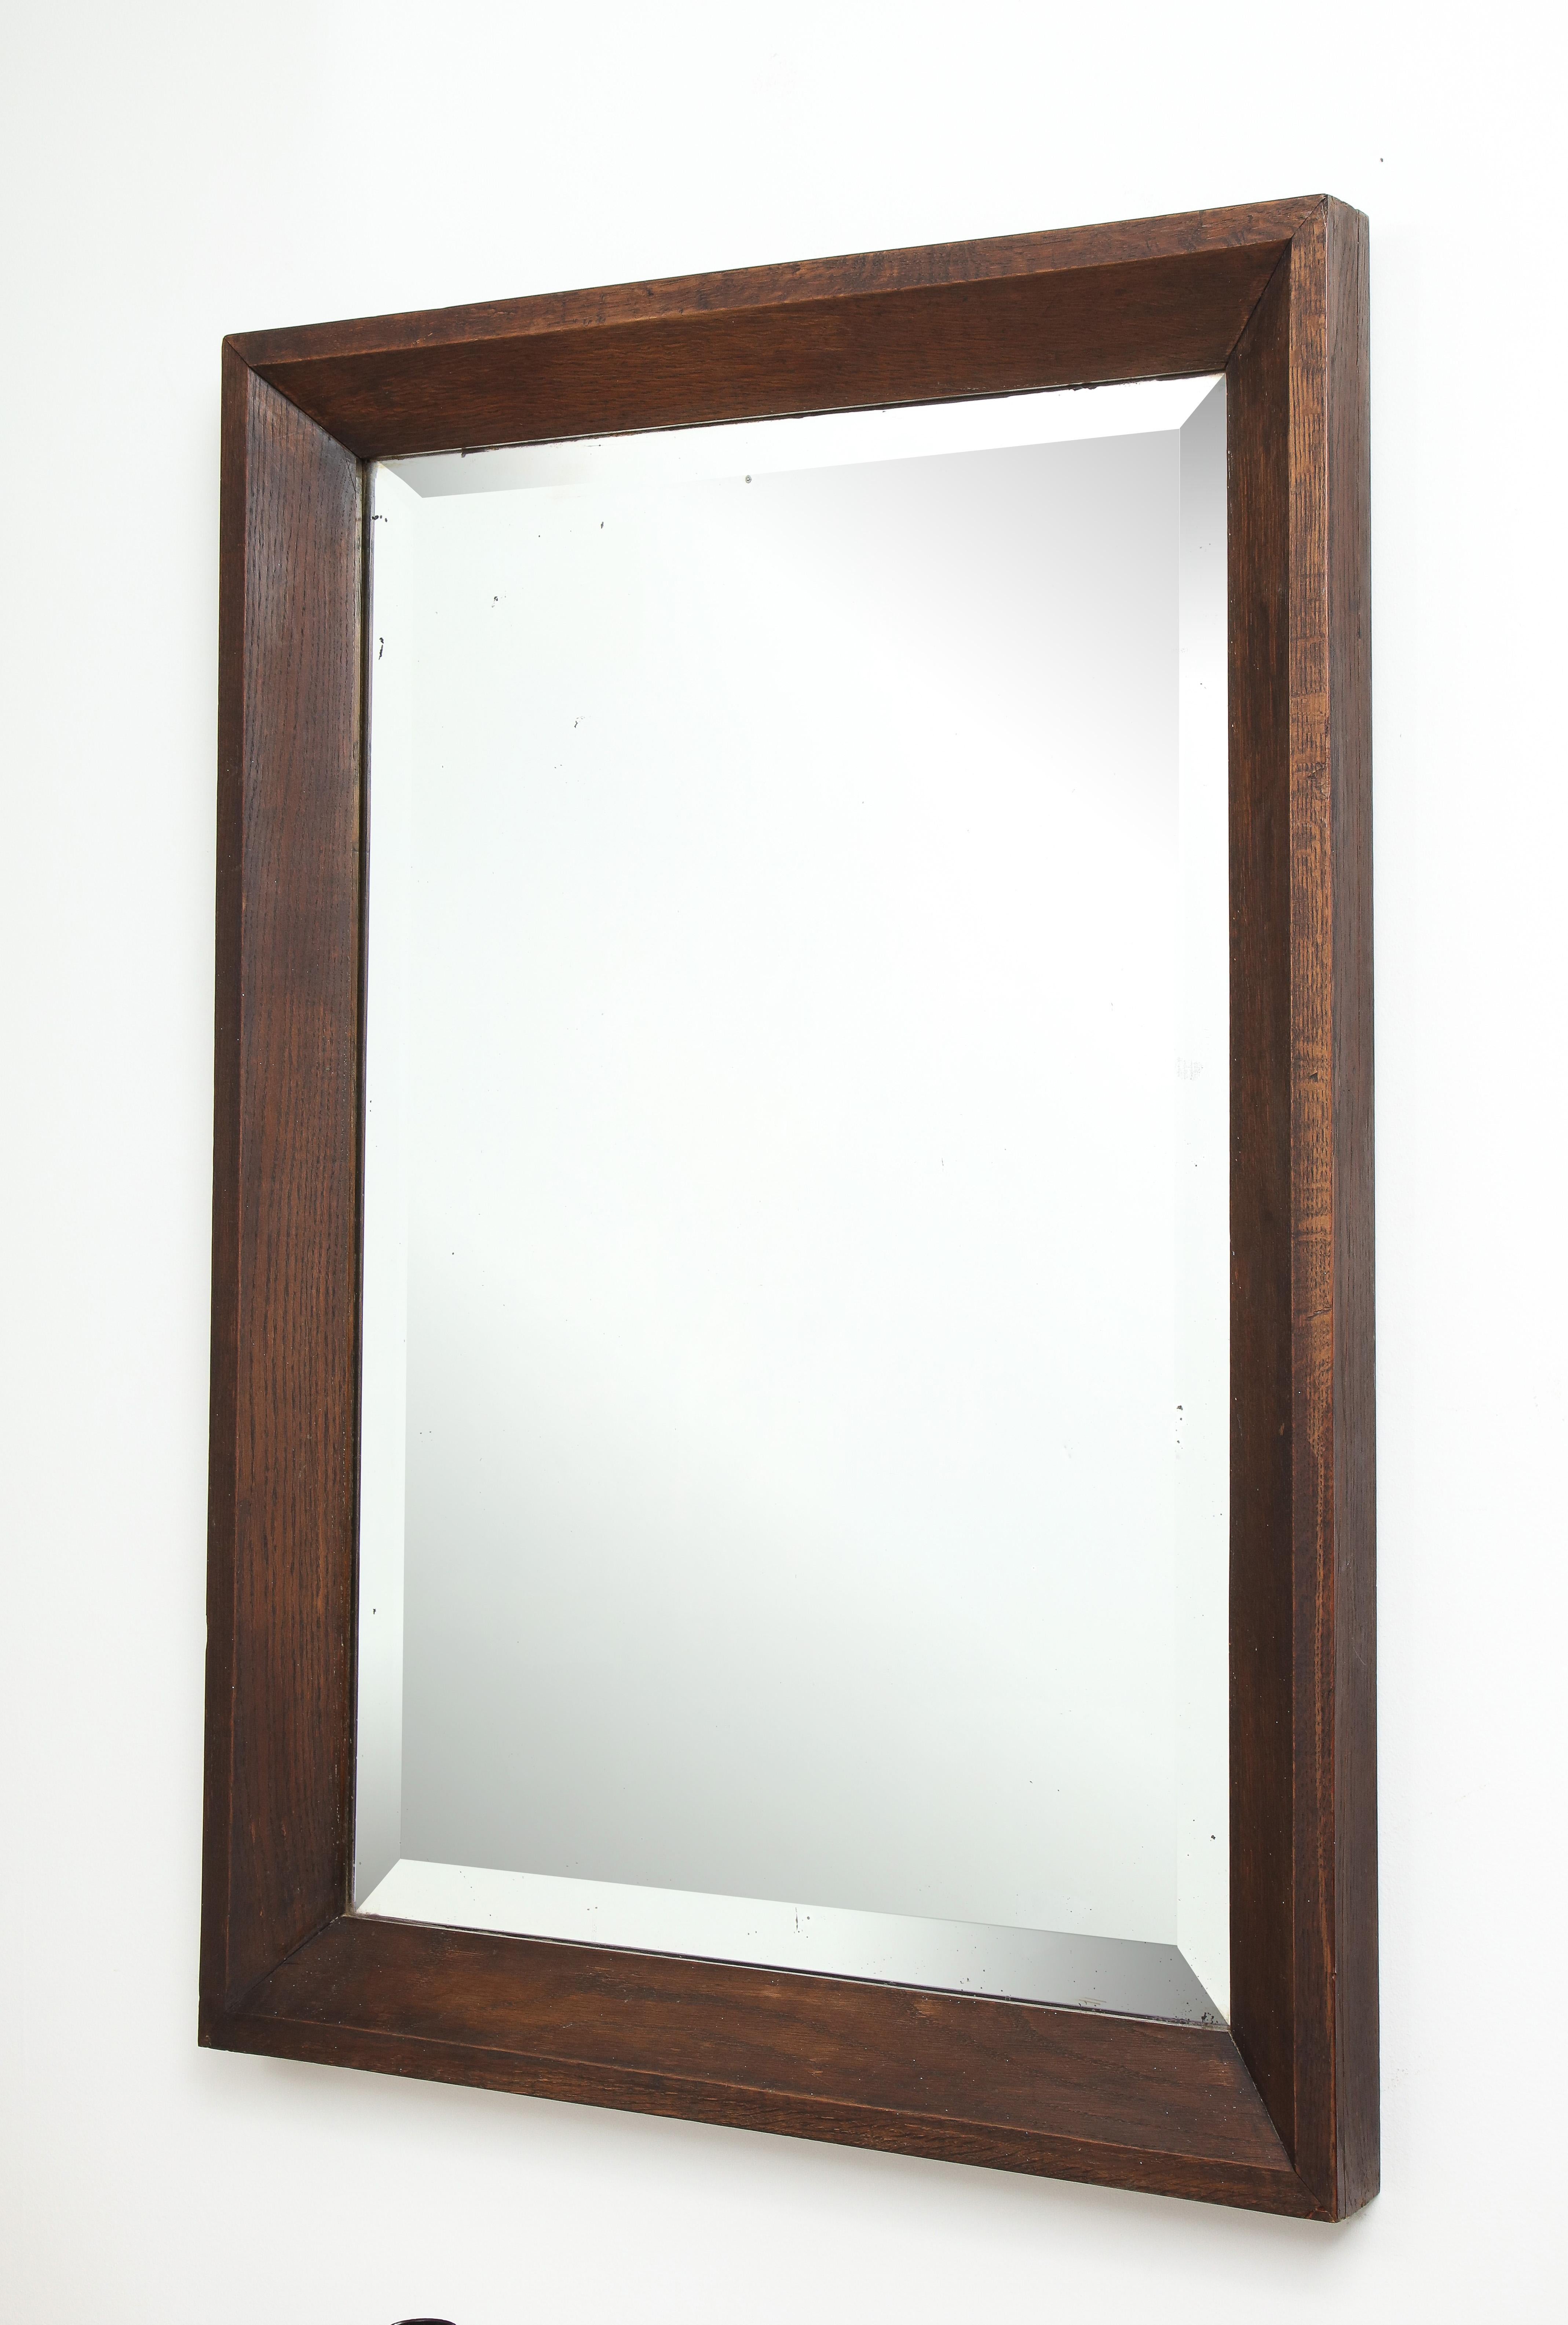 Large oak modernist mirror, original bevelled glass, France, c. 1930
Measures: H: 41 W: 29 in.